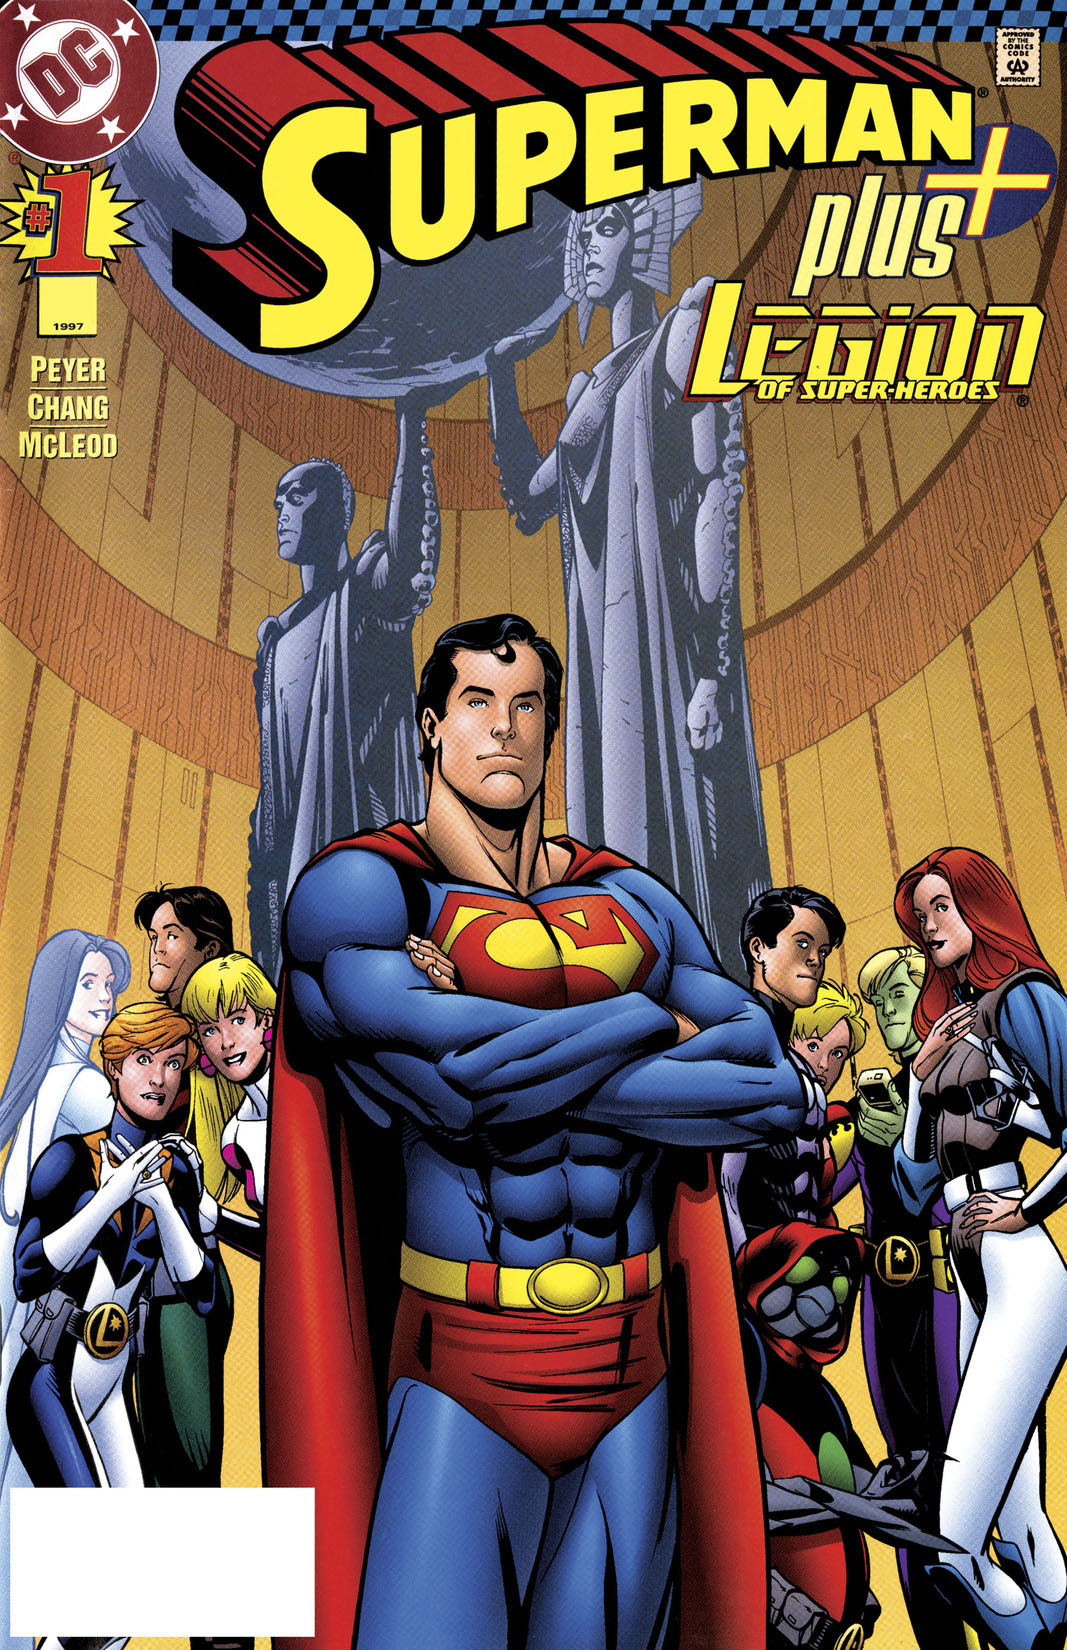 Superman Plus (1996-) #1 preview images